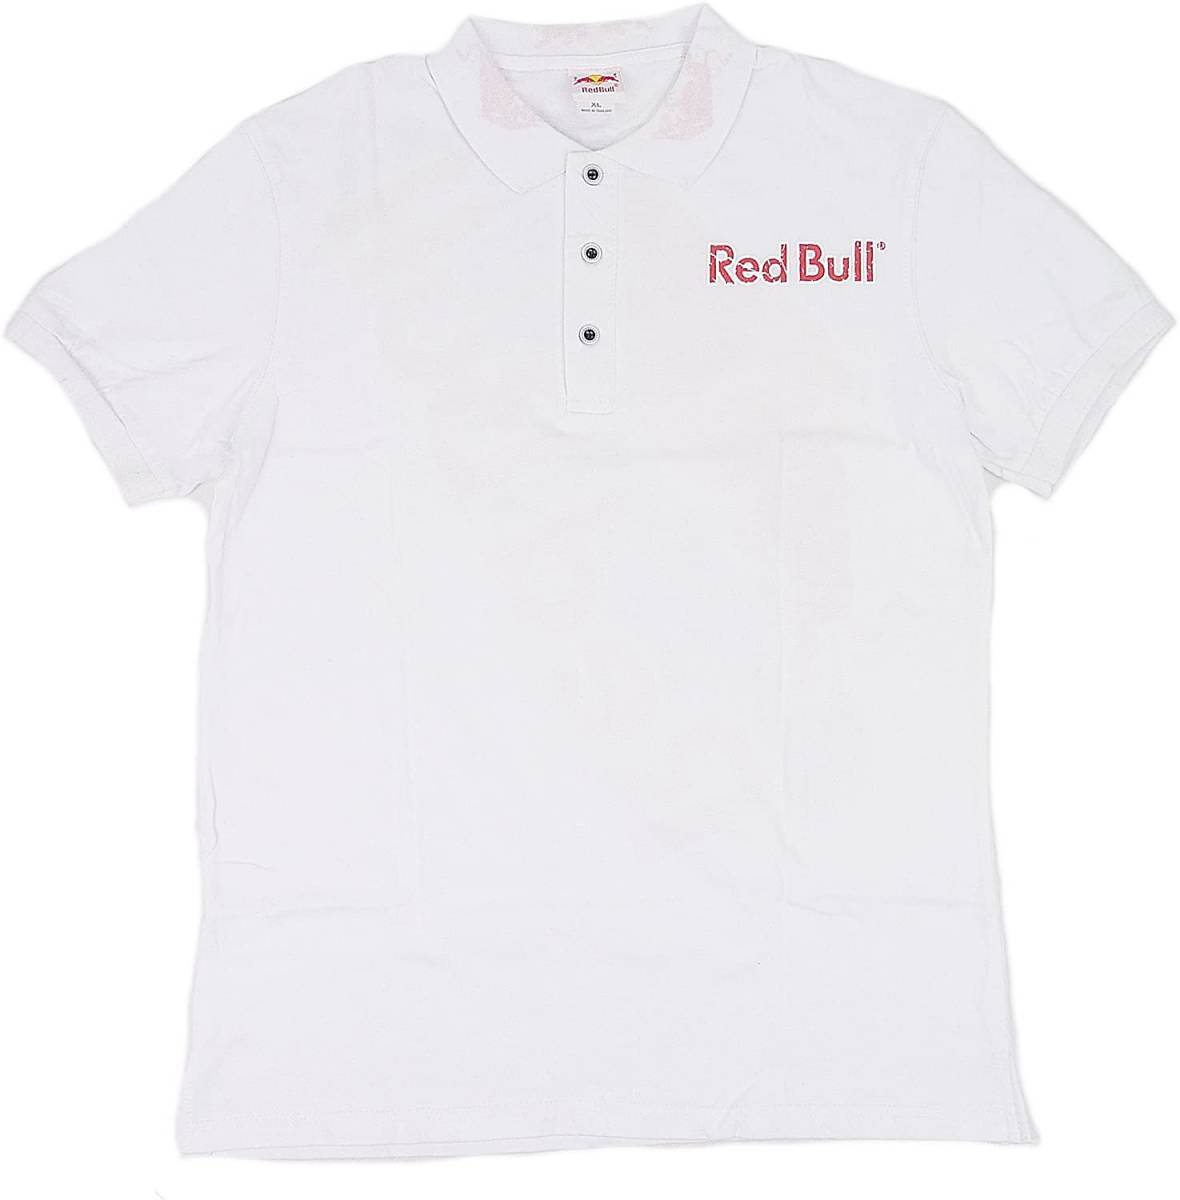 [並行輸入品] Red Bull レッドブル ロゴ タイヤ クラッシュ プリント 半袖ポロシャツ (ホワイト) (L)